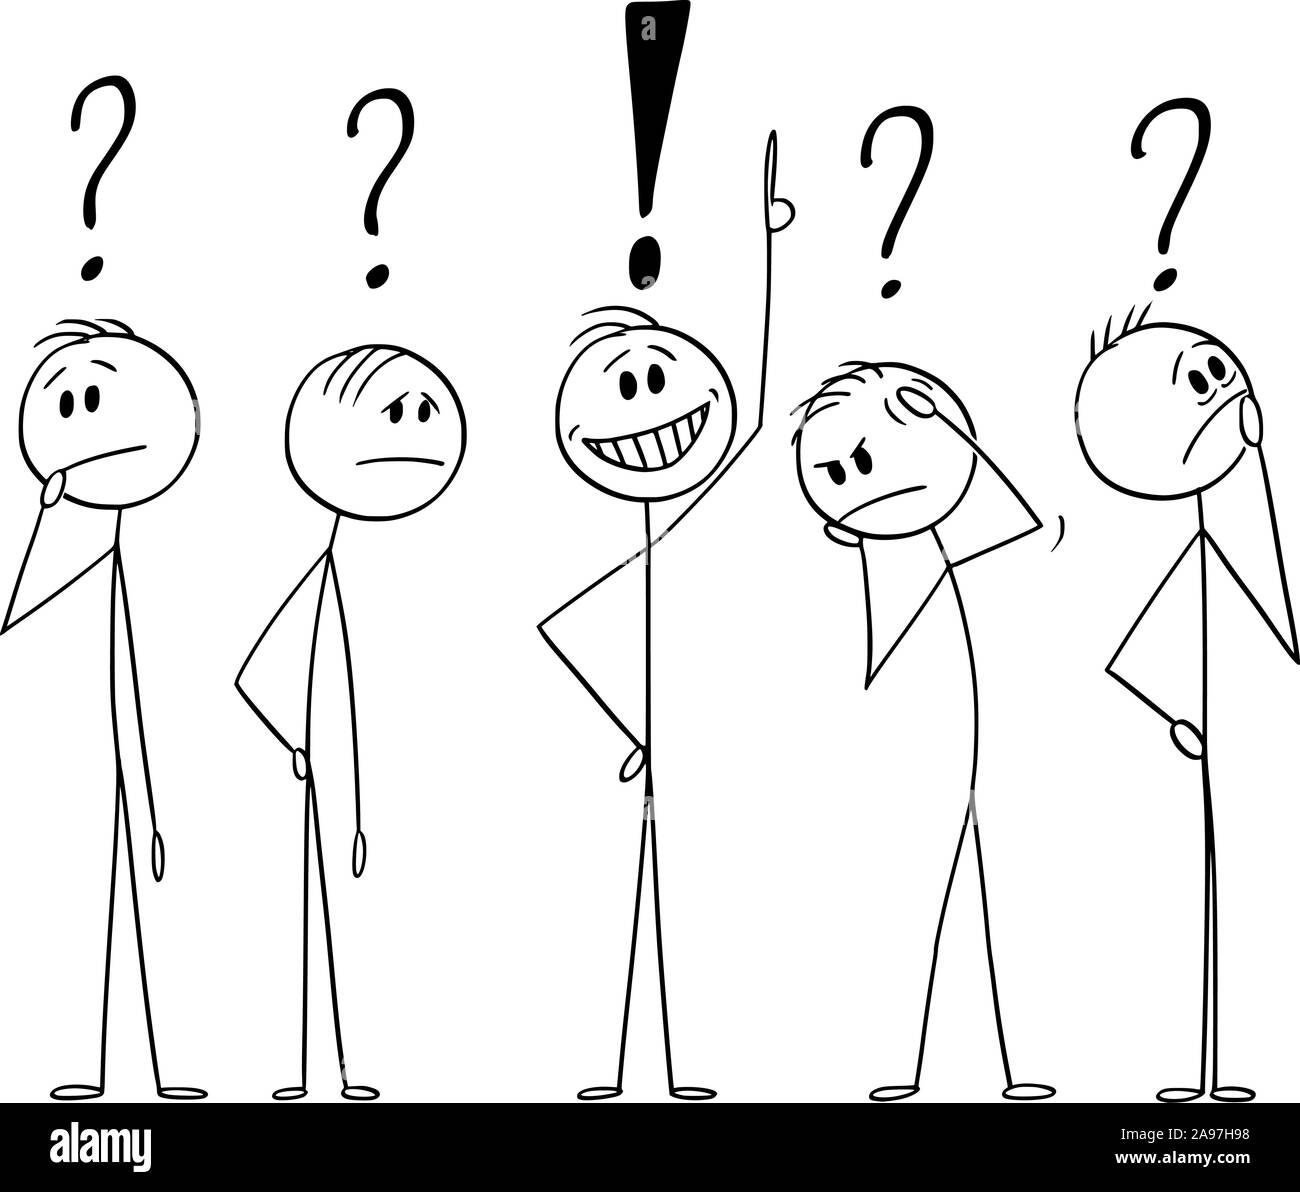 Vector cartoon stick figura disegno illustrazione concettuale di un gruppo di cinque uomini o imprenditori pensare insieme disco circa il problema. Soluzione trovata. Concetto di brainstorming. Illustrazione Vettoriale